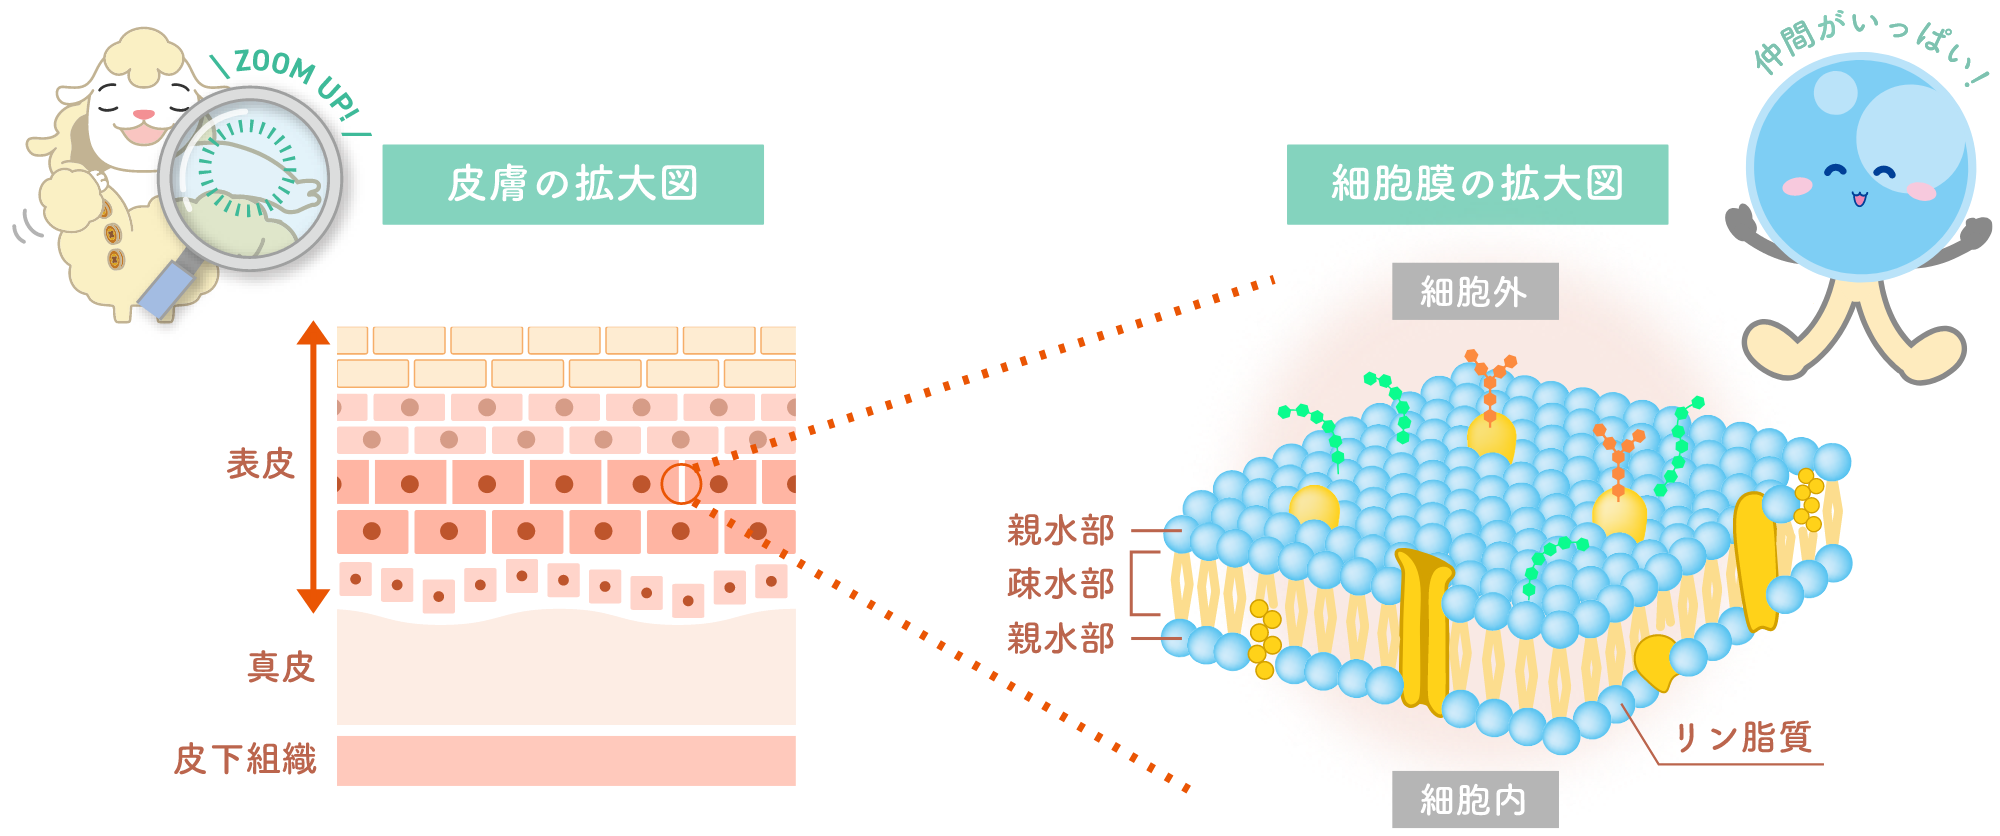 皮膚の拡大図と細胞膜の拡大図